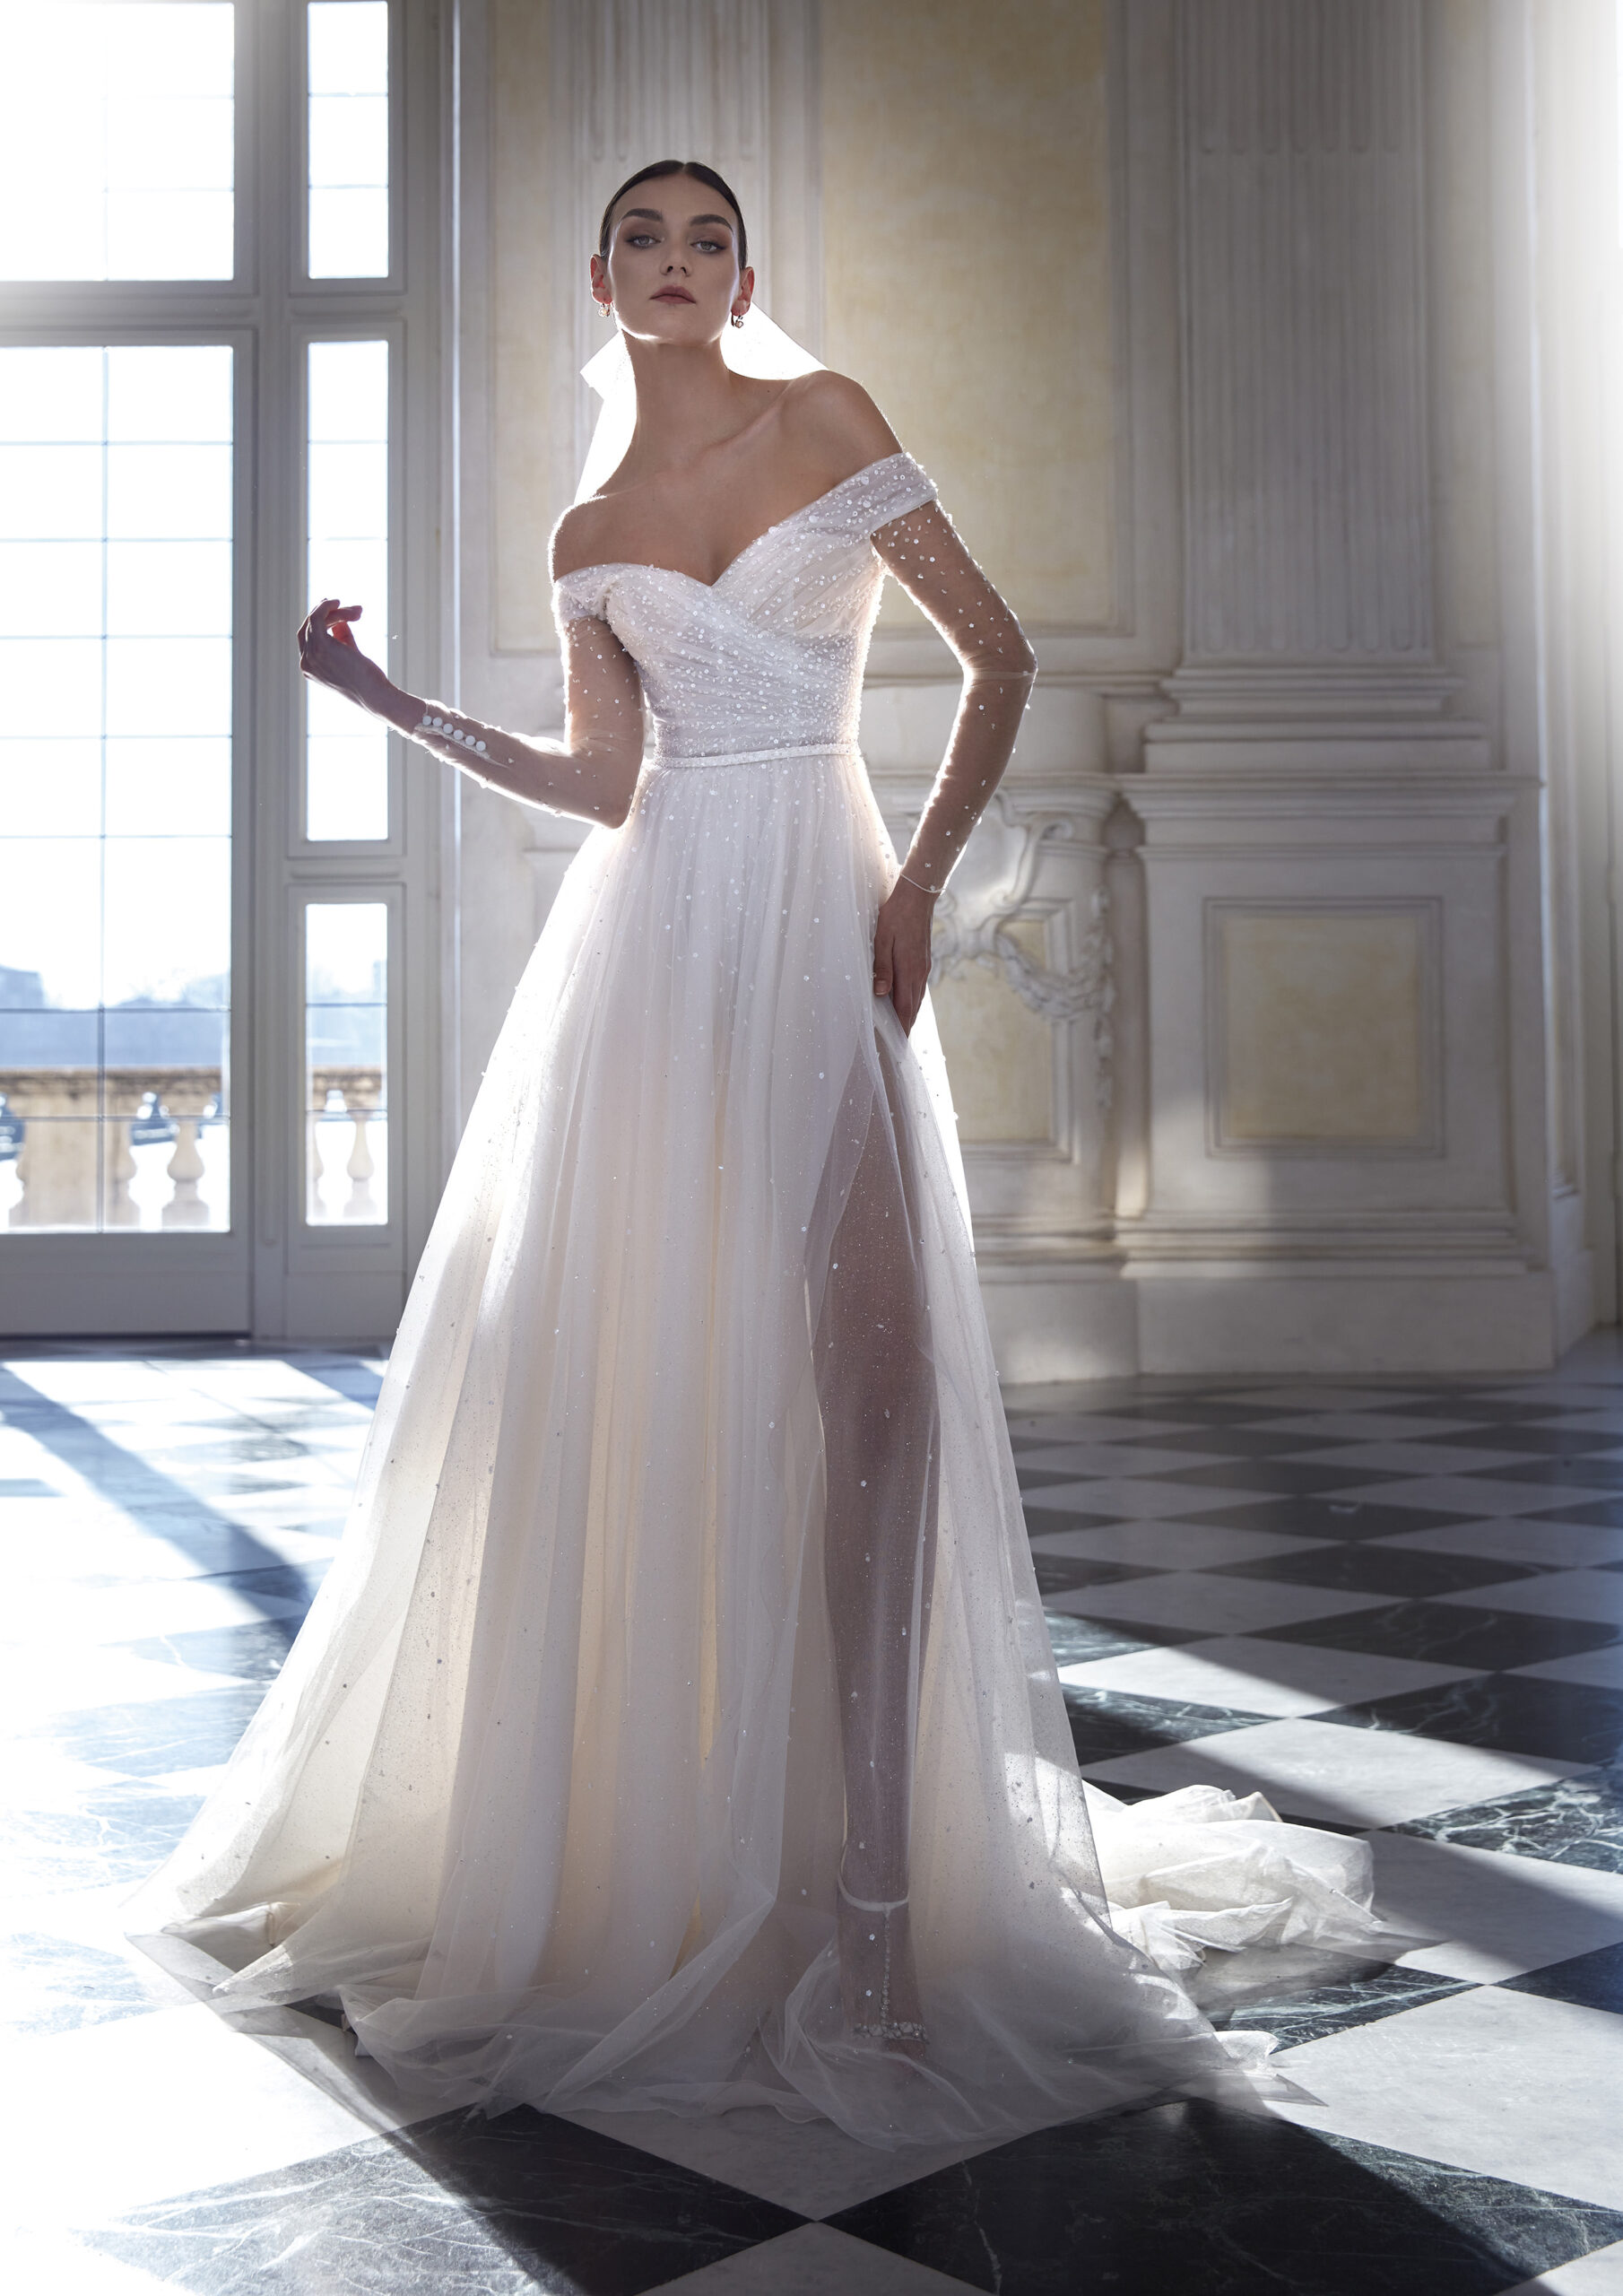 IDA B scaled "Dein Traum-Brautkleid für den schönsten Tag im Leben"